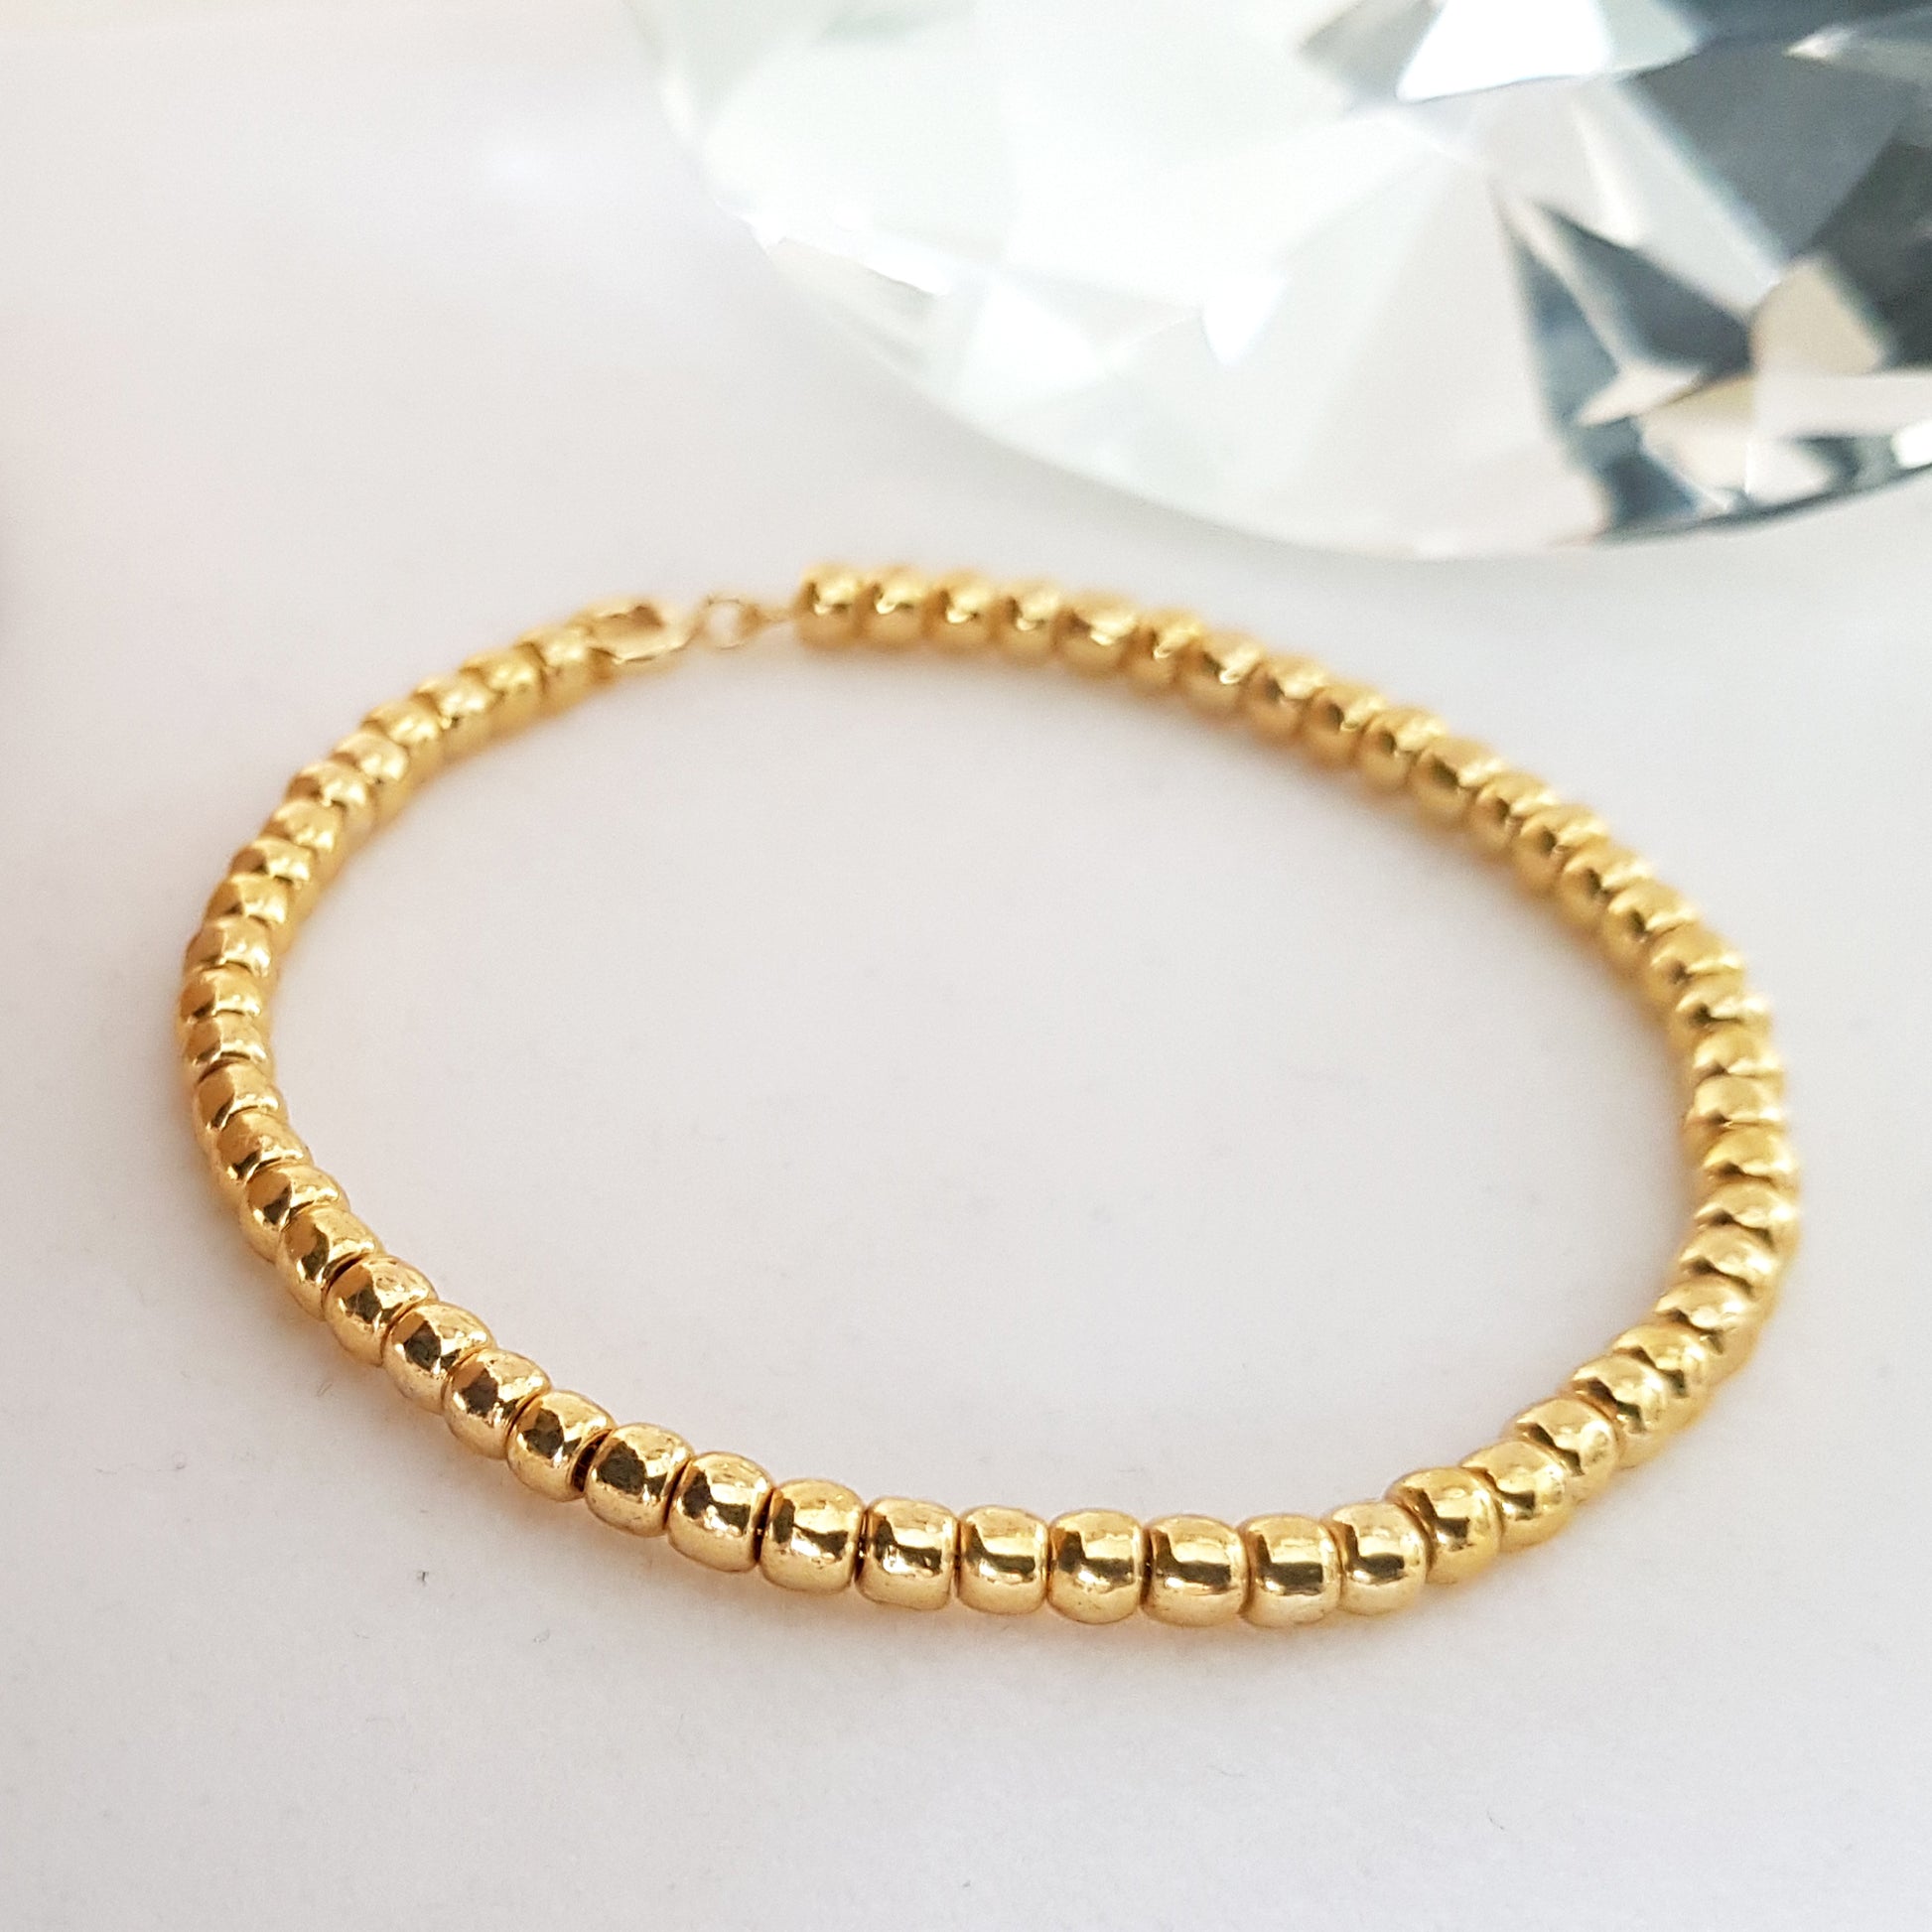 Gold beaded bracelet - white background - handmade  item